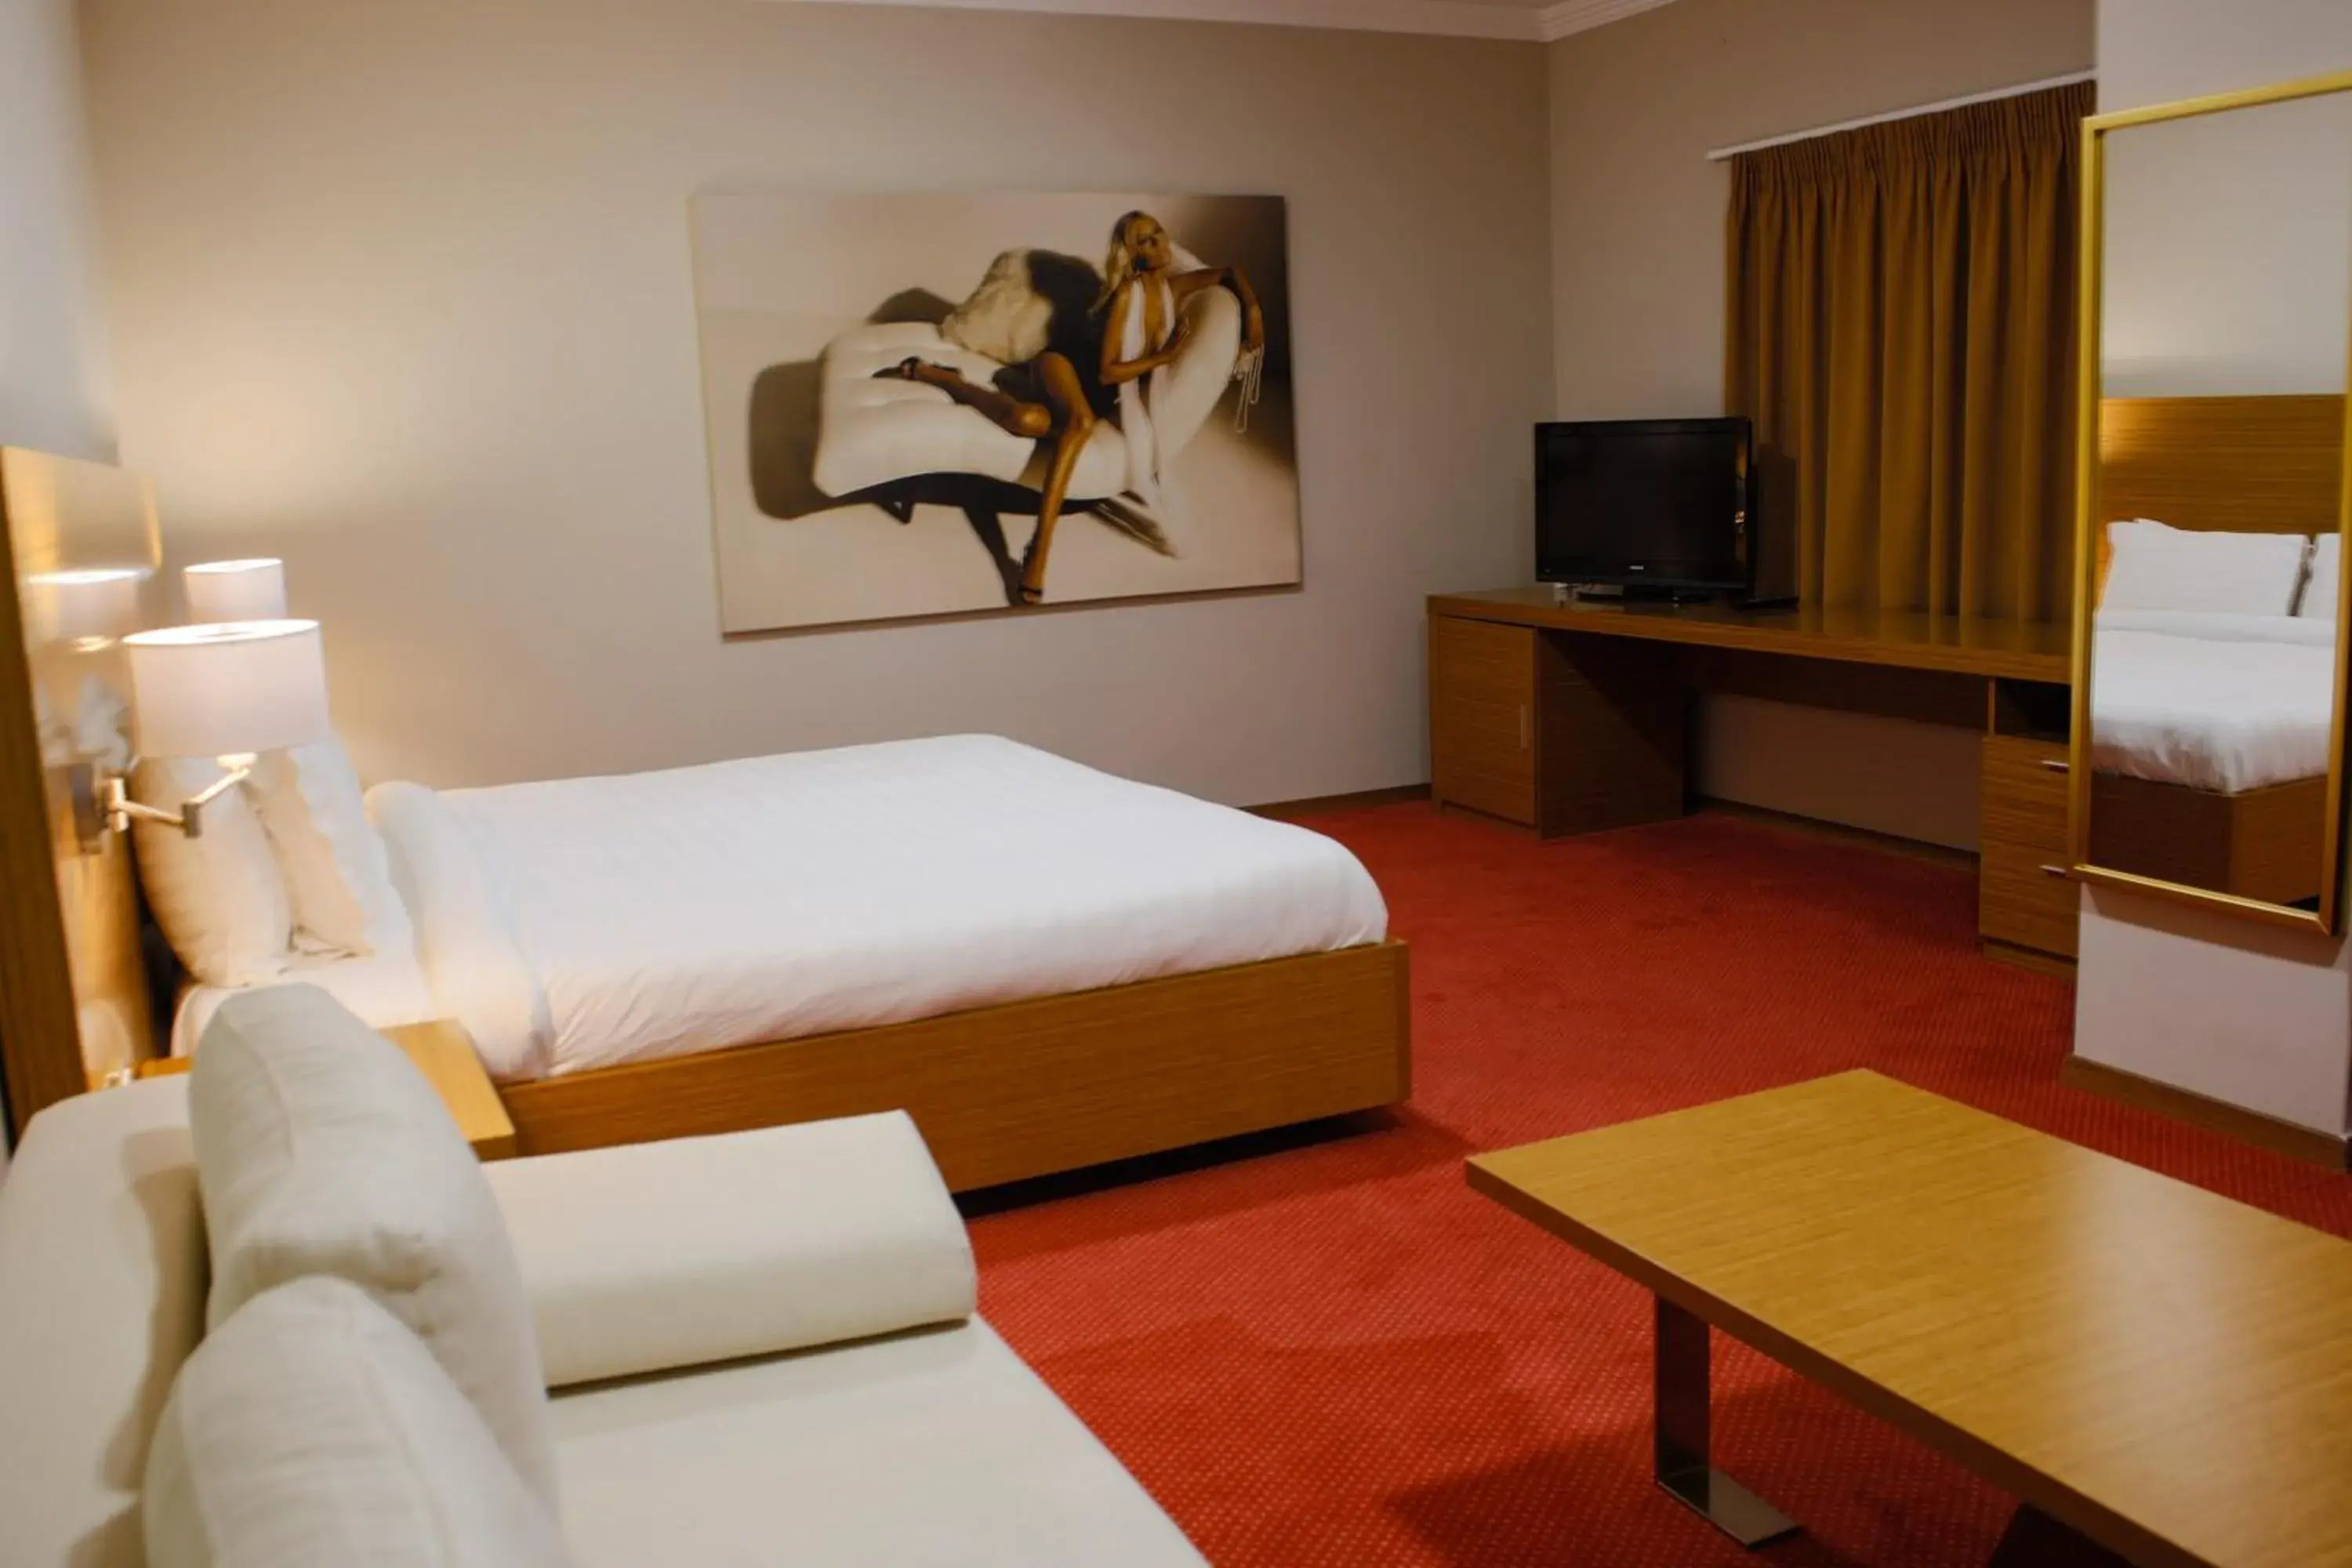 Bedroom, Room Photo in Hotel Jaroal